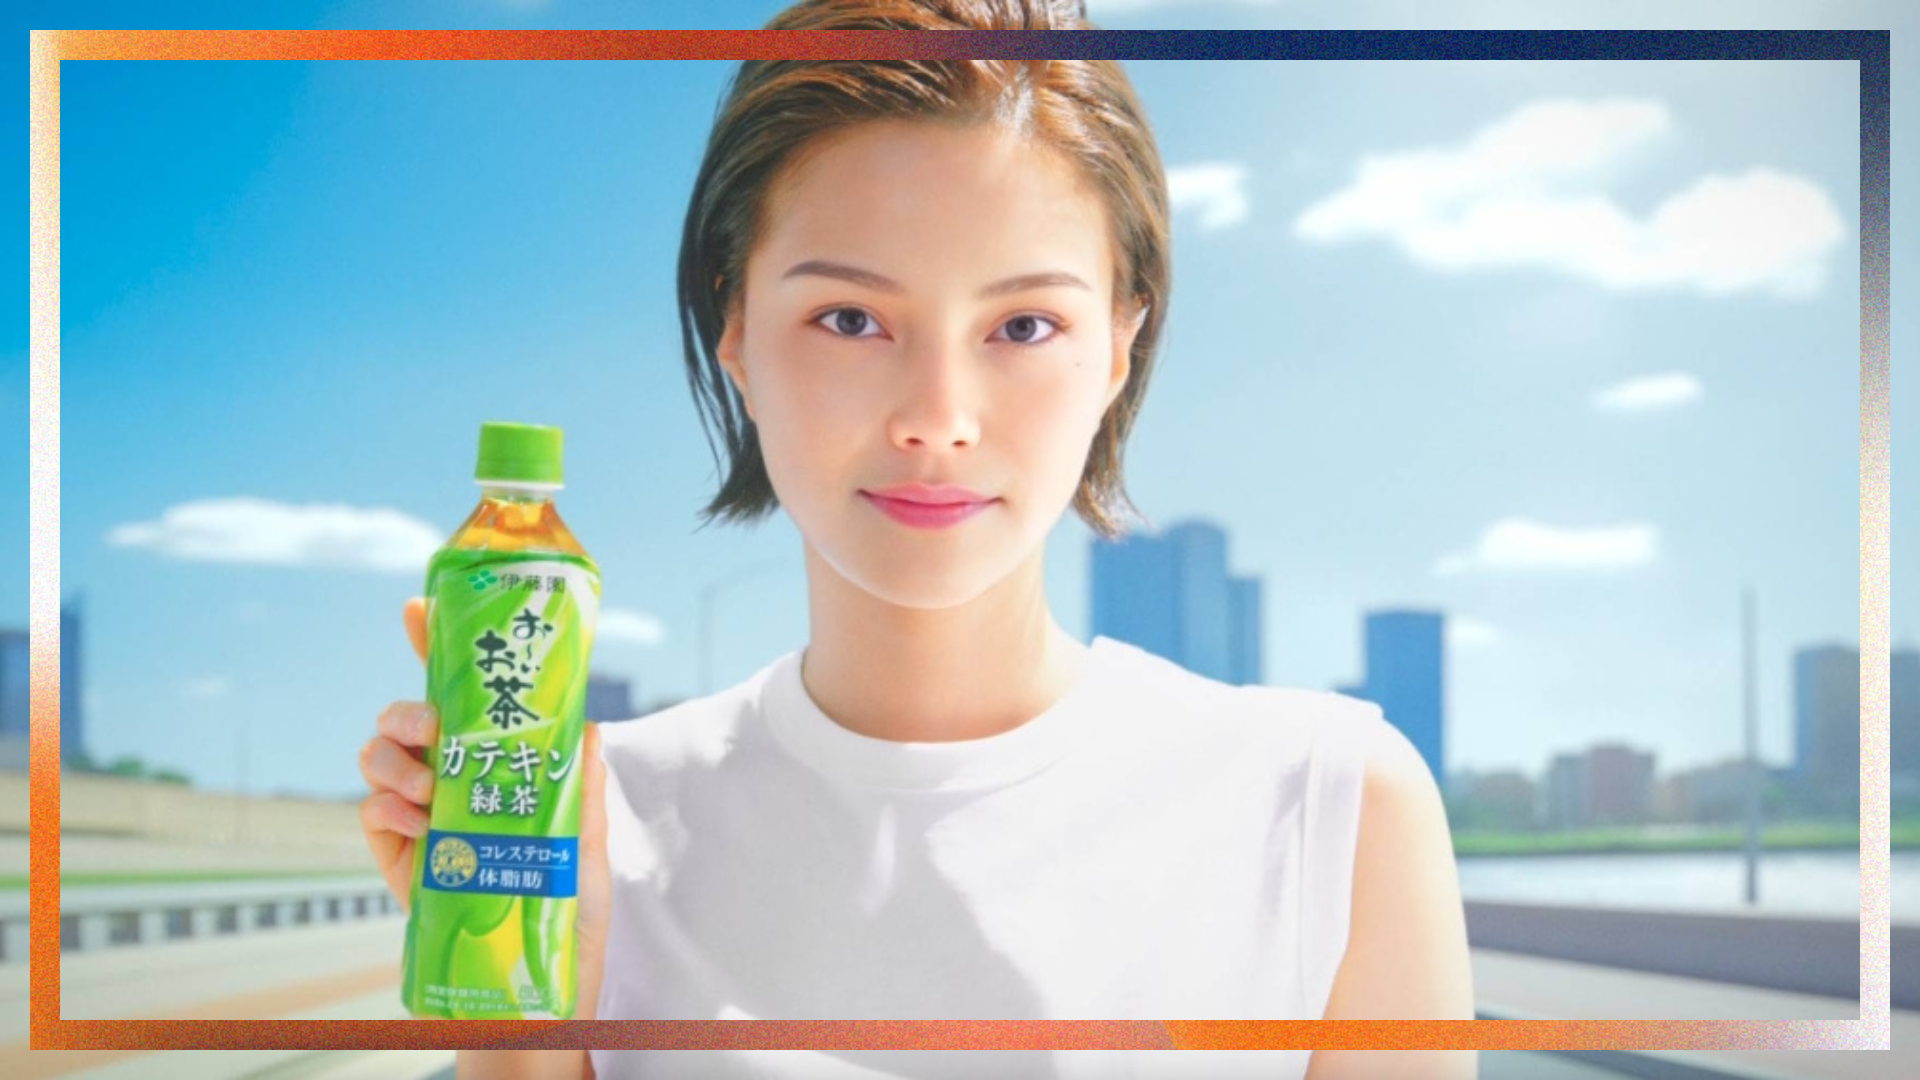 एआई जापानी विज्ञापन में केंद्र चरण लेता है